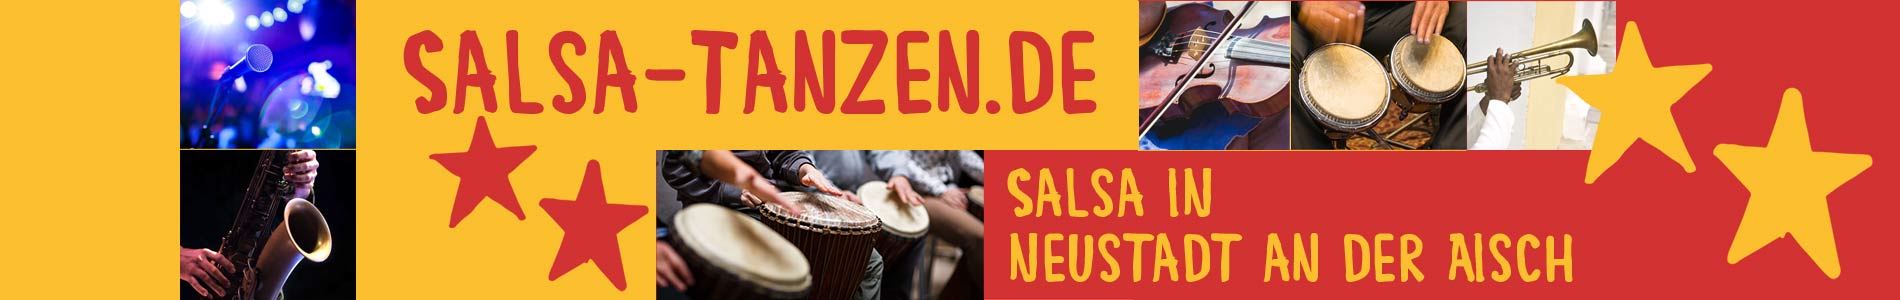 Salsa in Neustadt an der Aisch – Salsa lernen und tanzen, Tanzkurse, Partys, Veranstaltungen